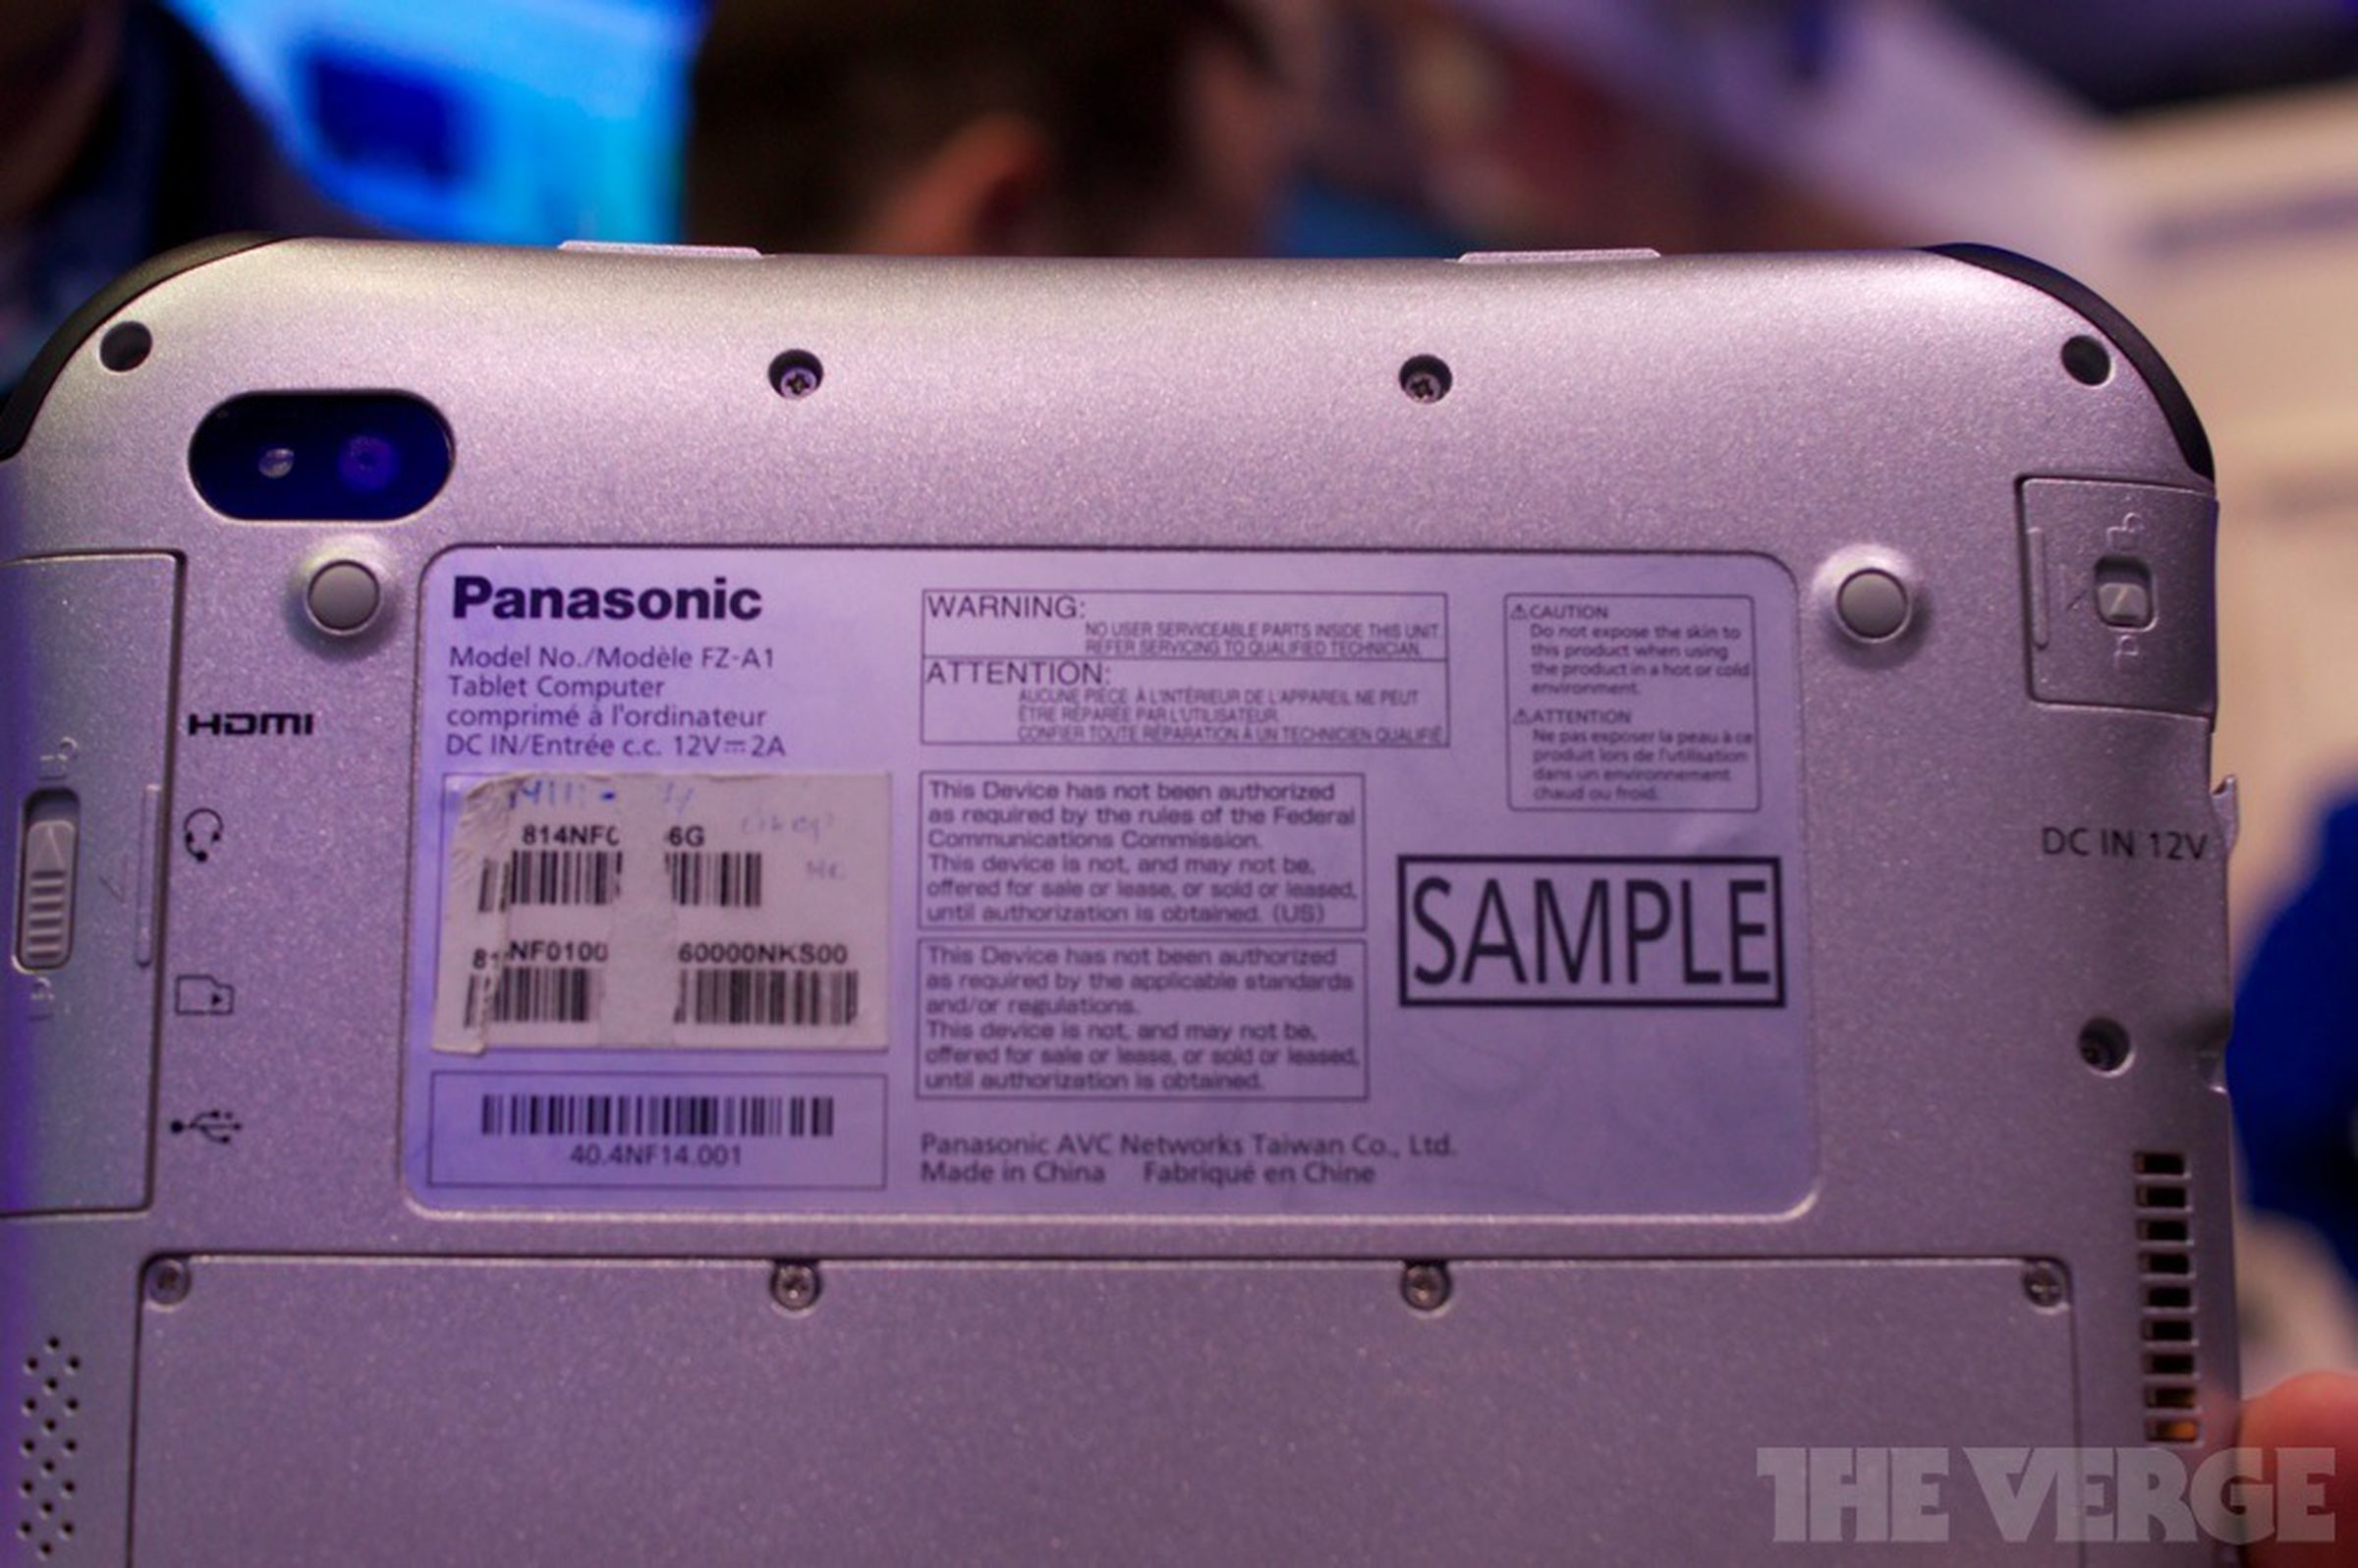 Panasonic ToughPad A1 photos